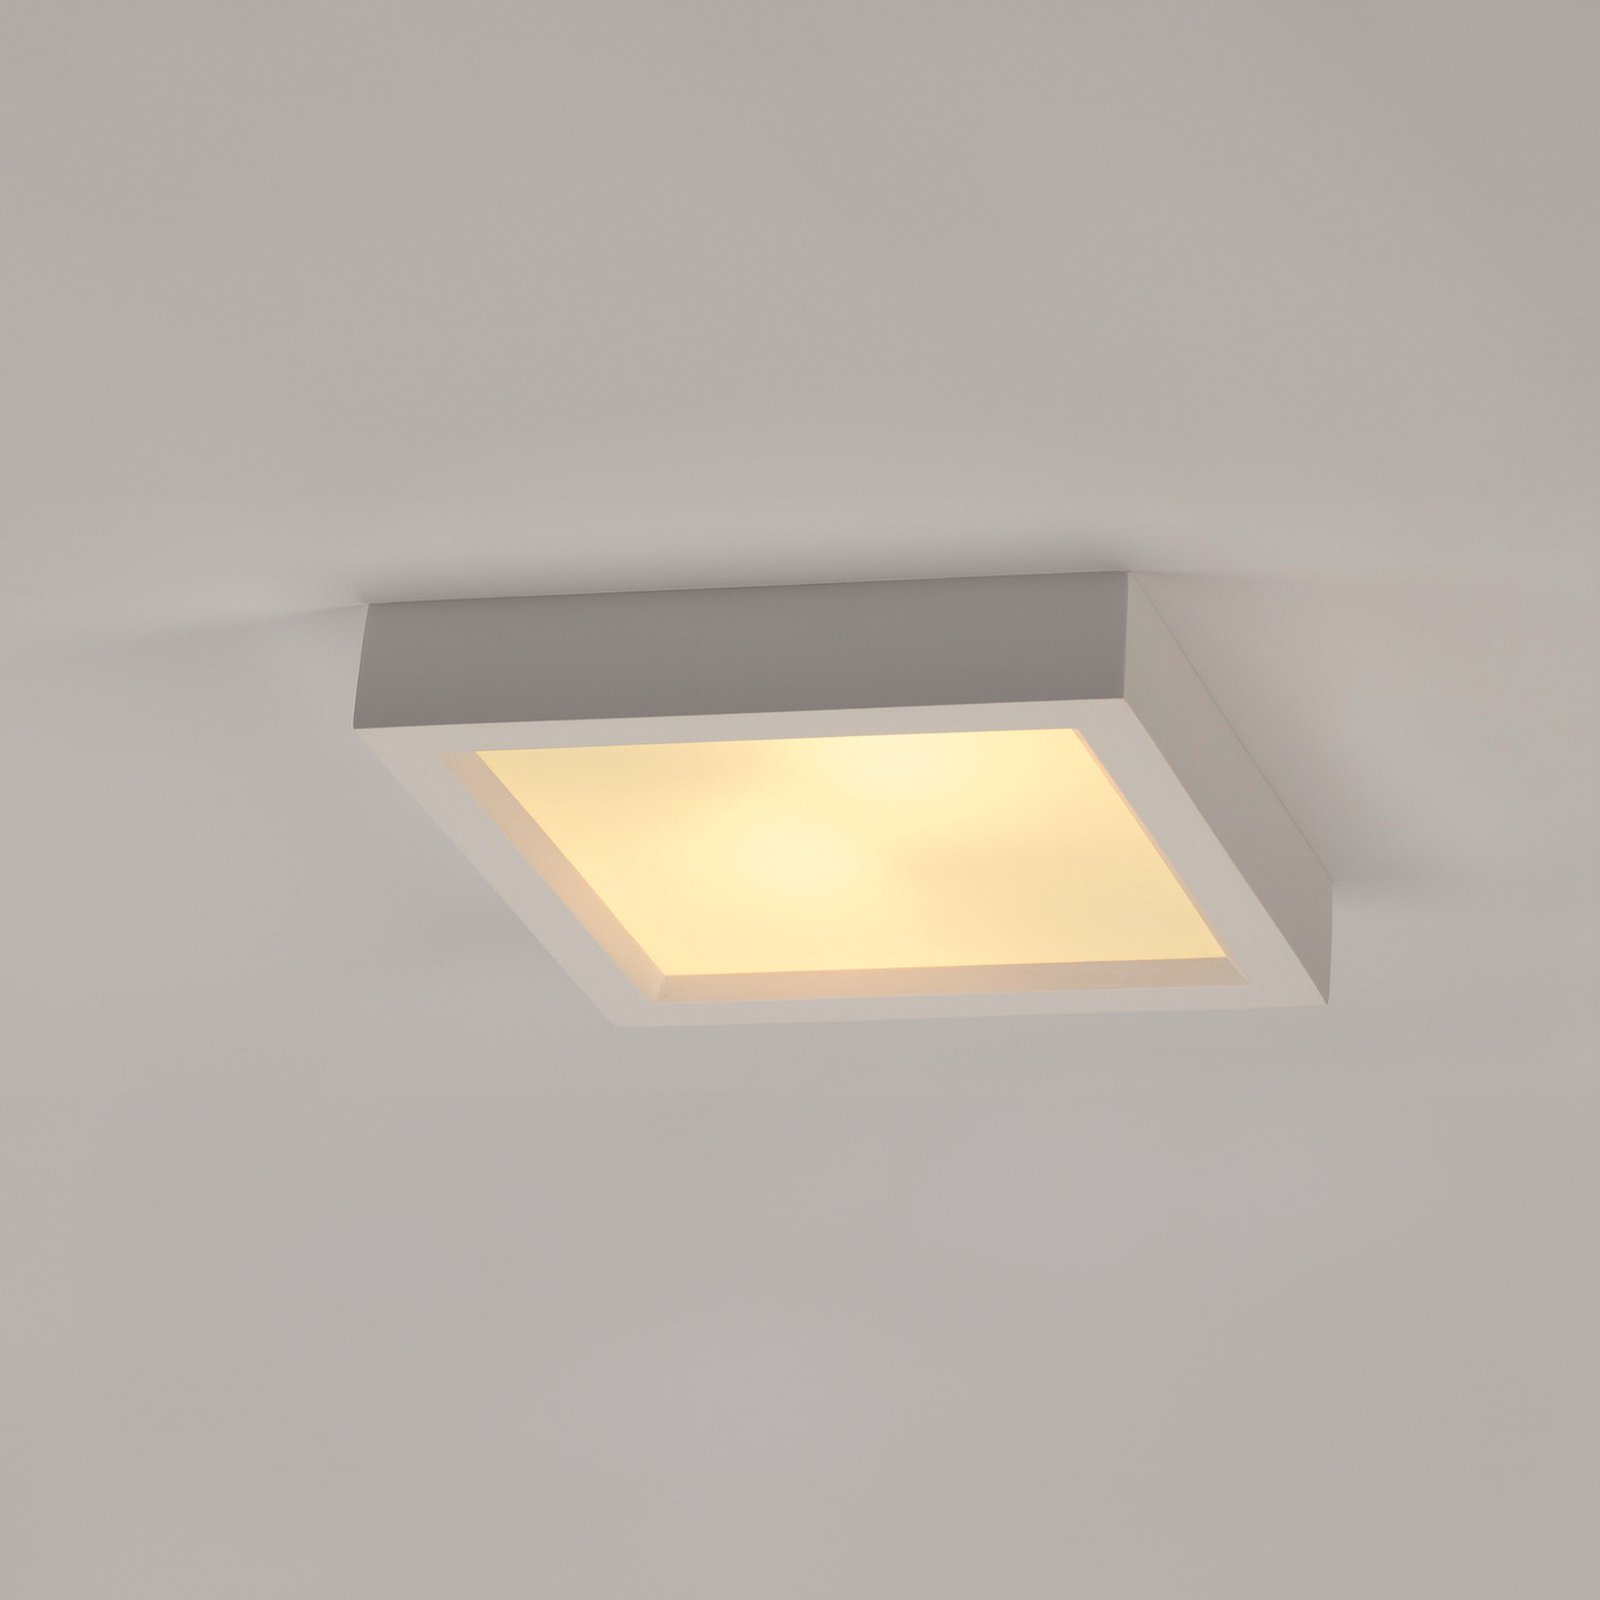 SLV Plastra 104 ceiling lamp, white, plaster, width 25 cm